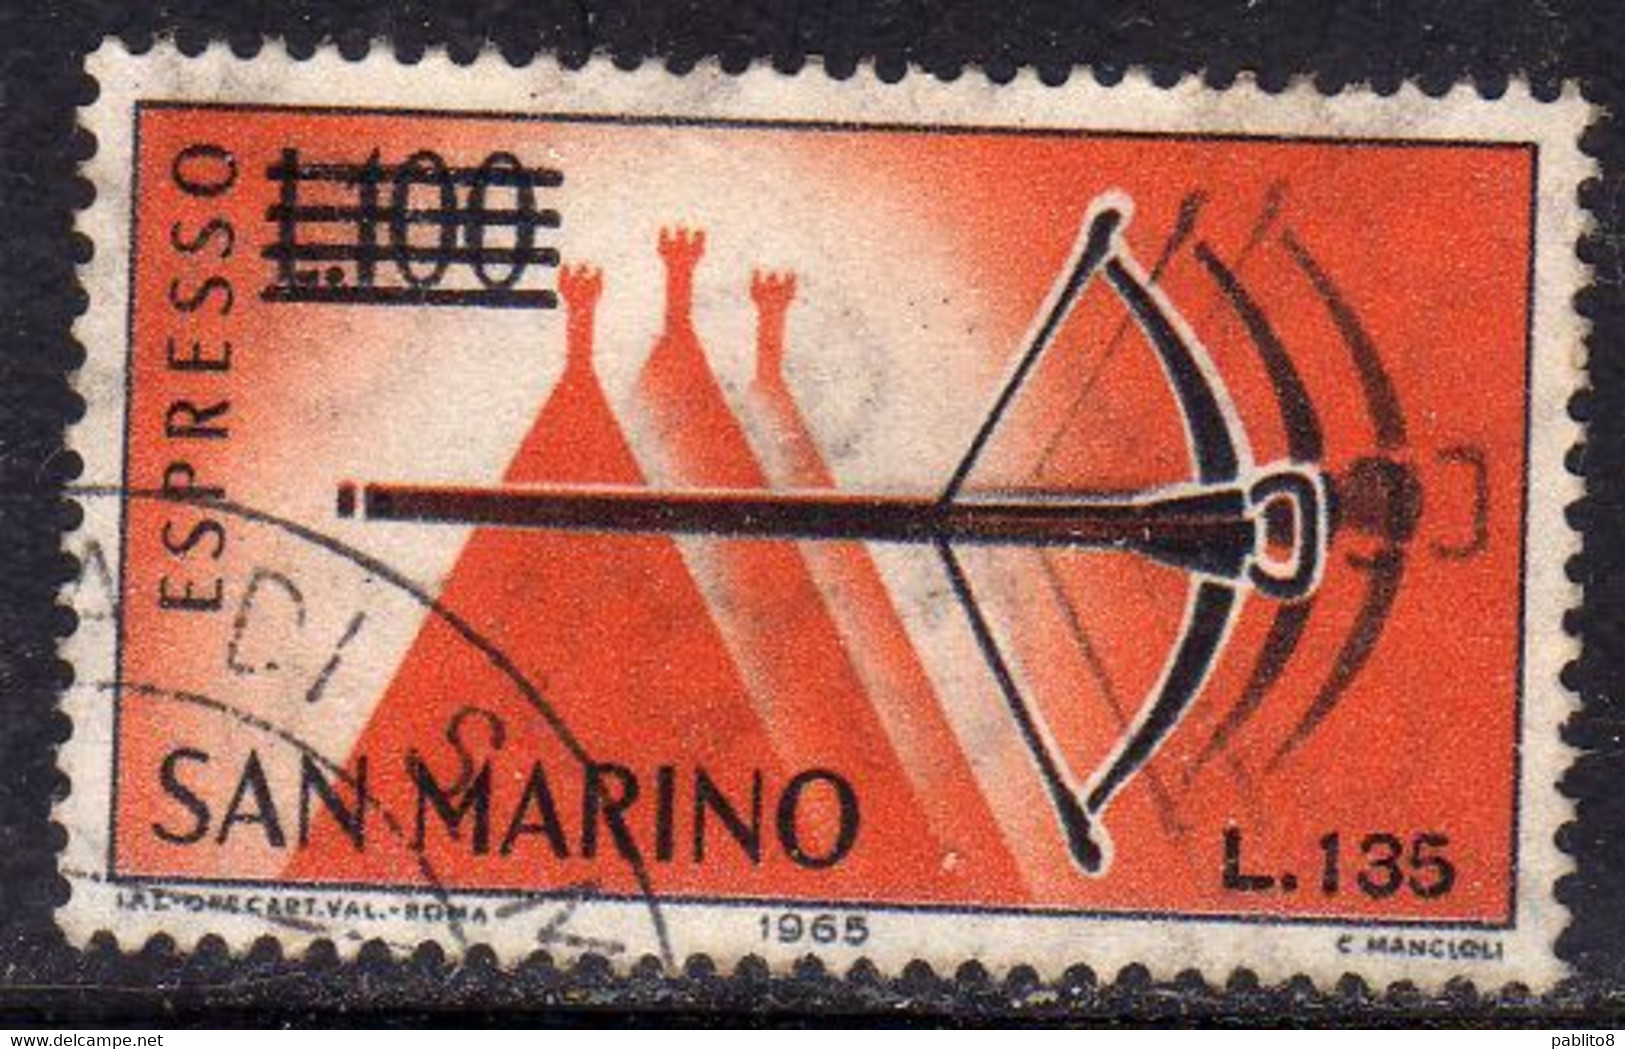 REPUBBLICA DI SAN MARINO 1965 ESPRESSI SPECIAL DELIVERY BALESTRA SOPRASTAMPATO SURCHARGED LIRE 135 SU 100 USATO USED - Eilpost